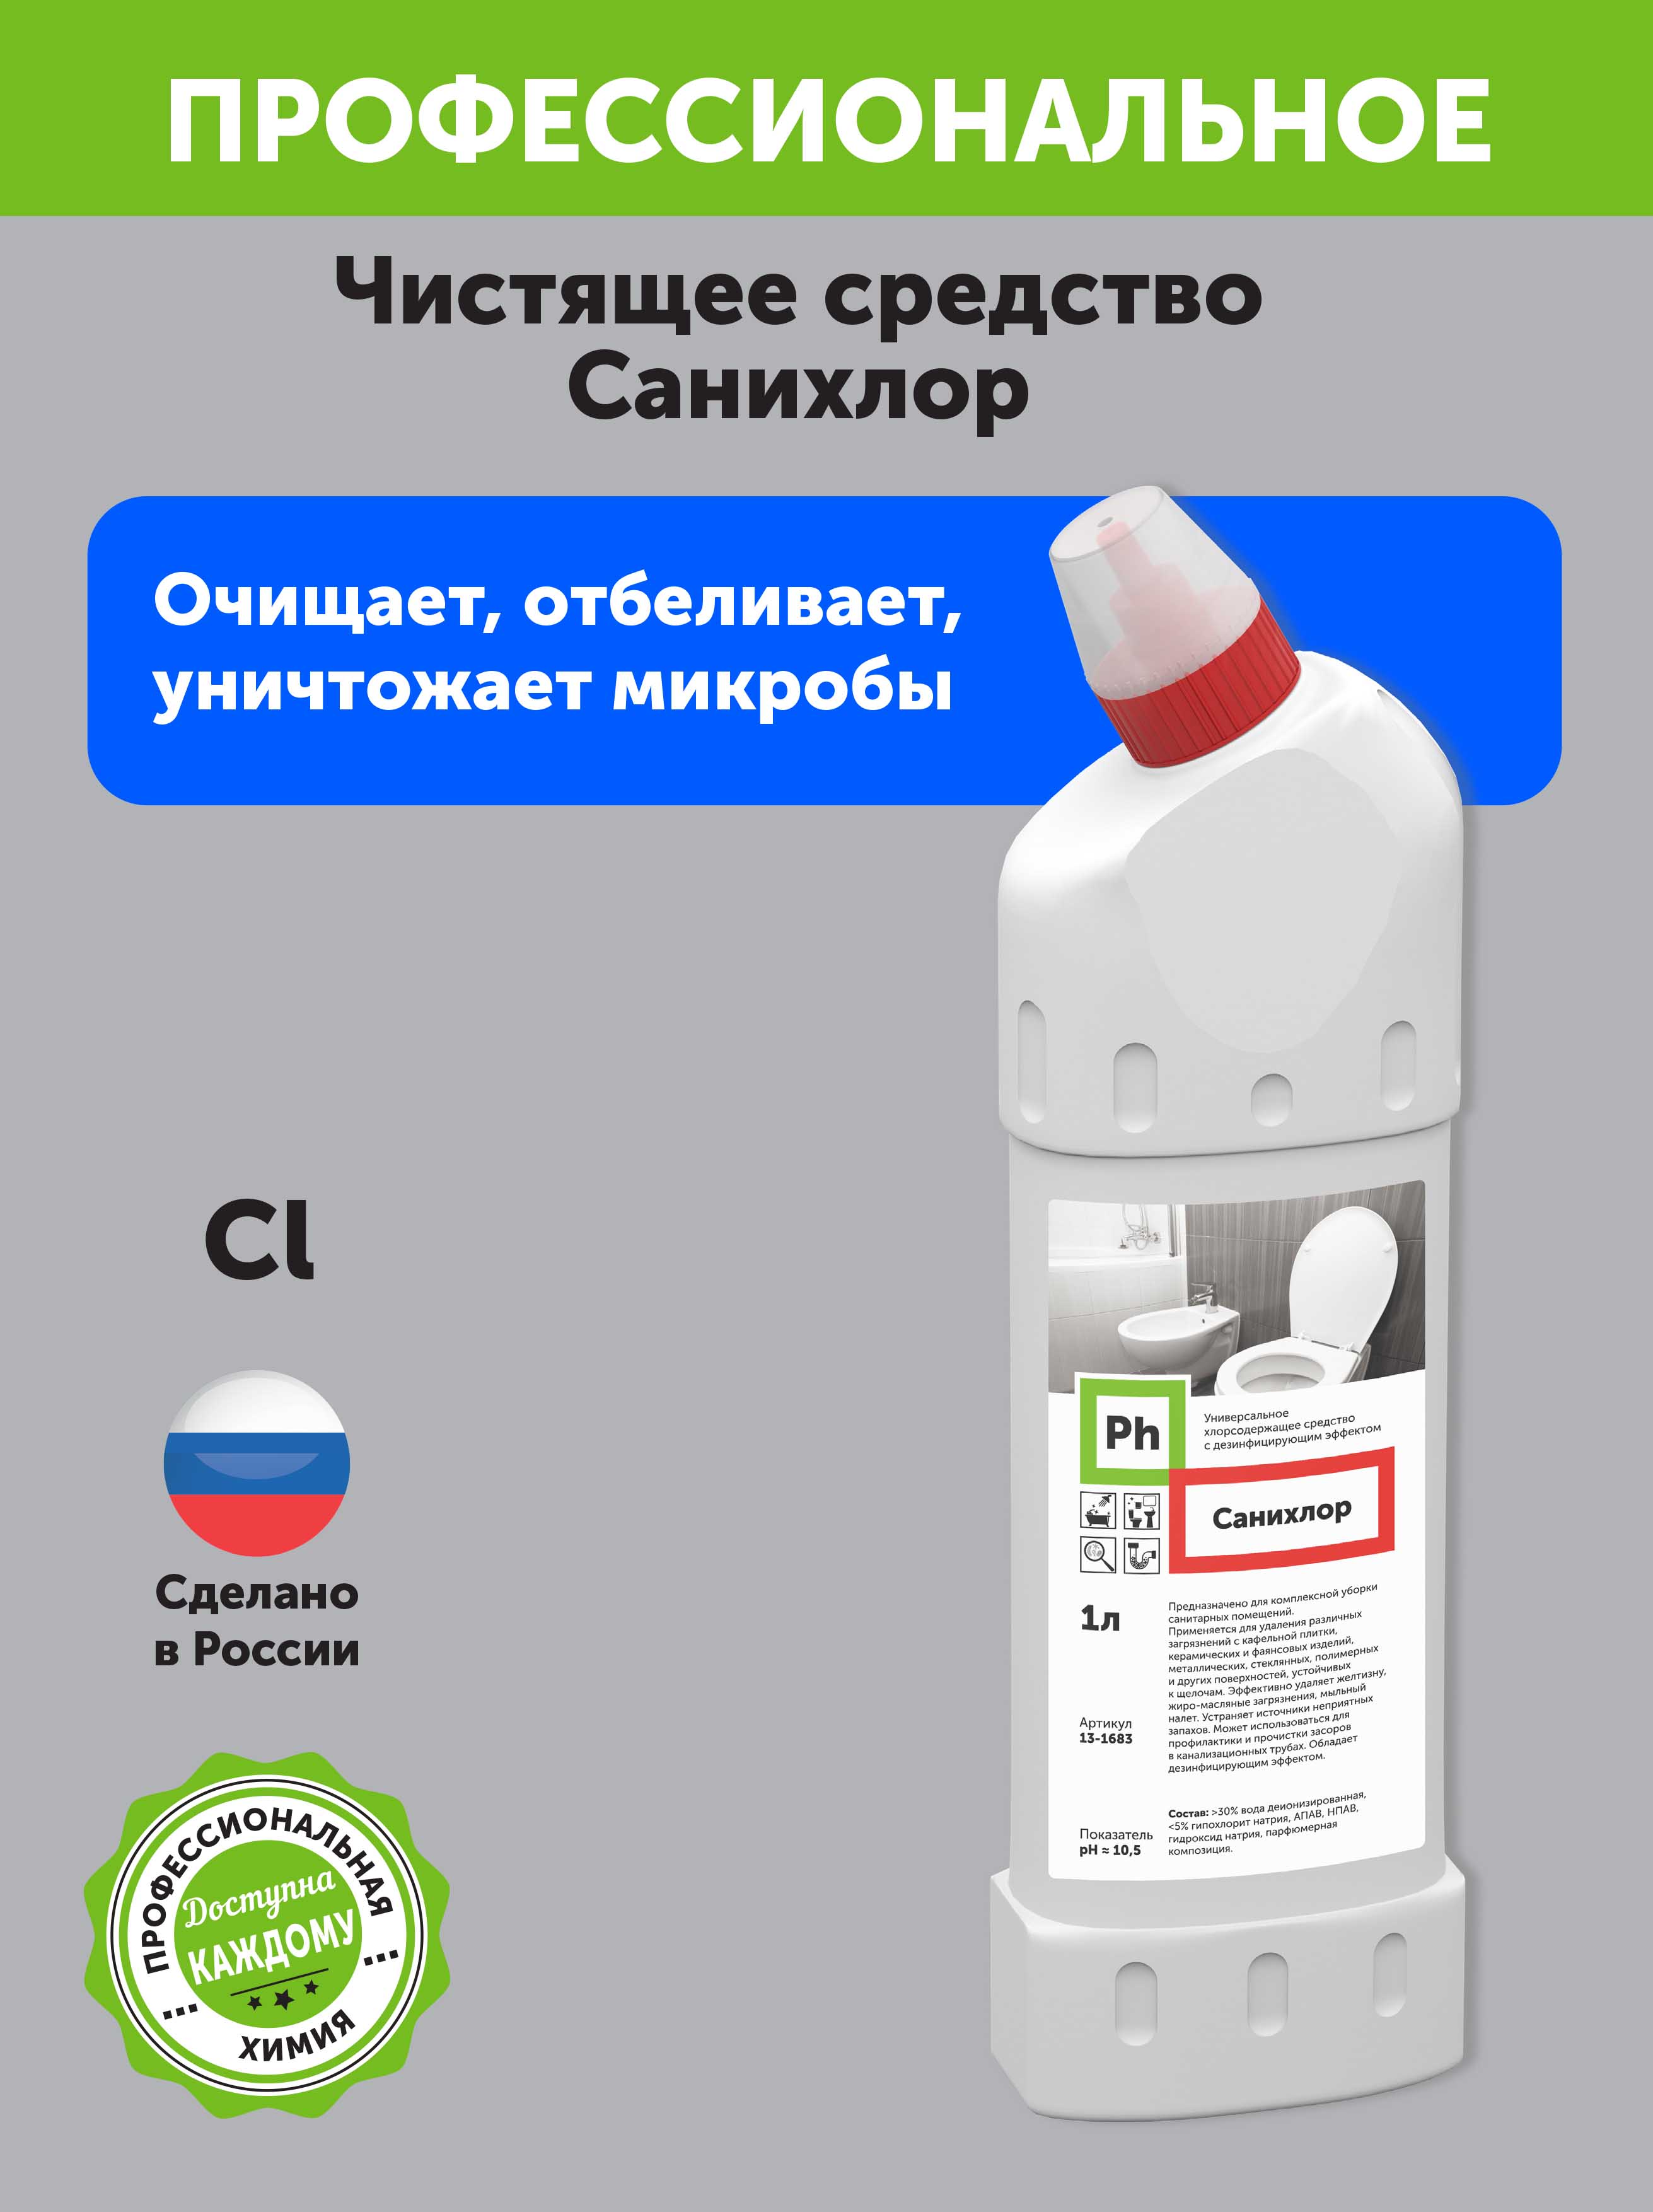 Гель для чистки унитаза Ph Санихлор 1 литр - фото 2